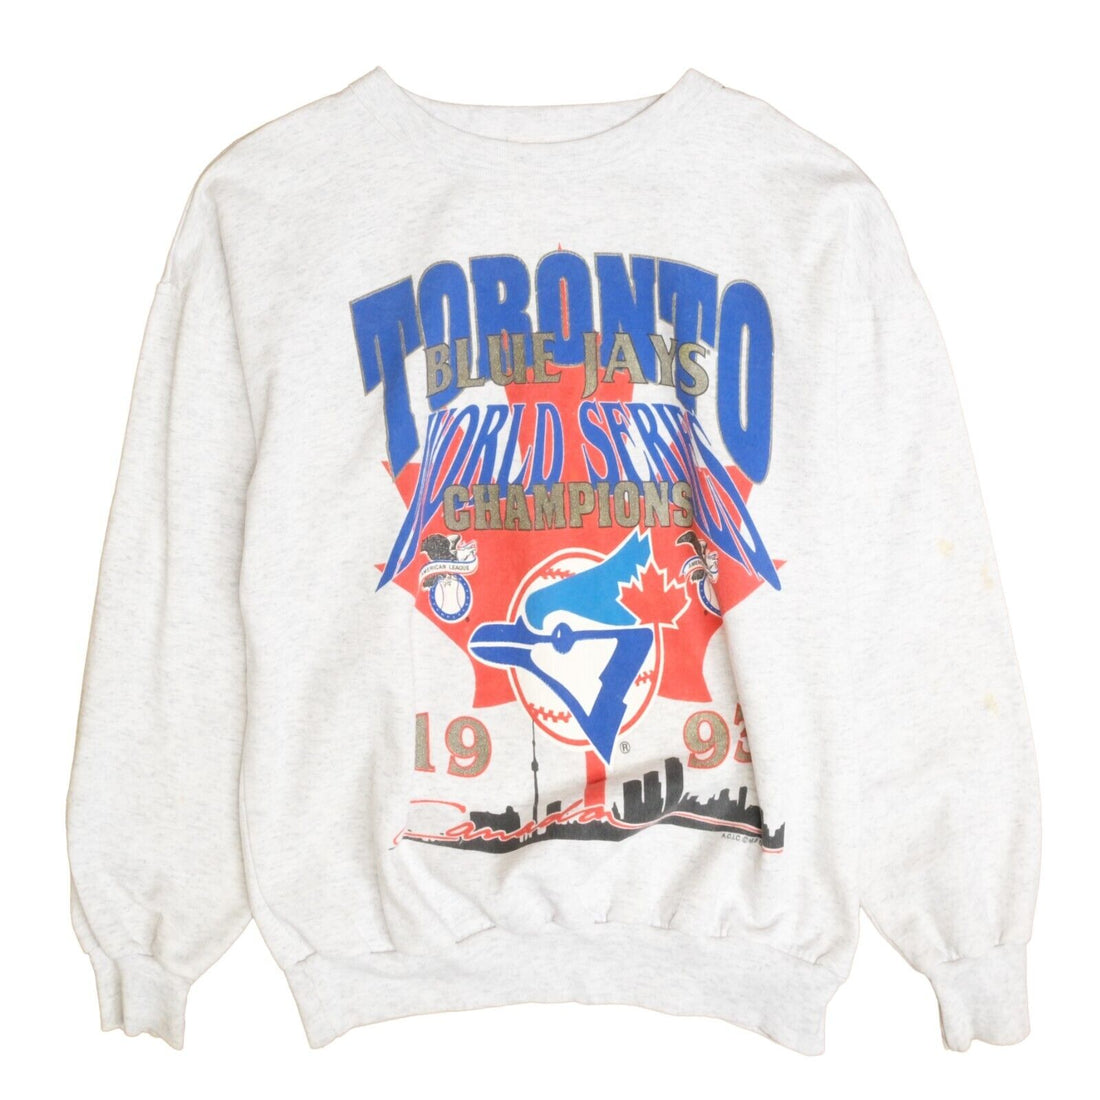 Vintage Toronto Blue Jays World Series Champions Sweatshirt Medium 1993 90s MLB